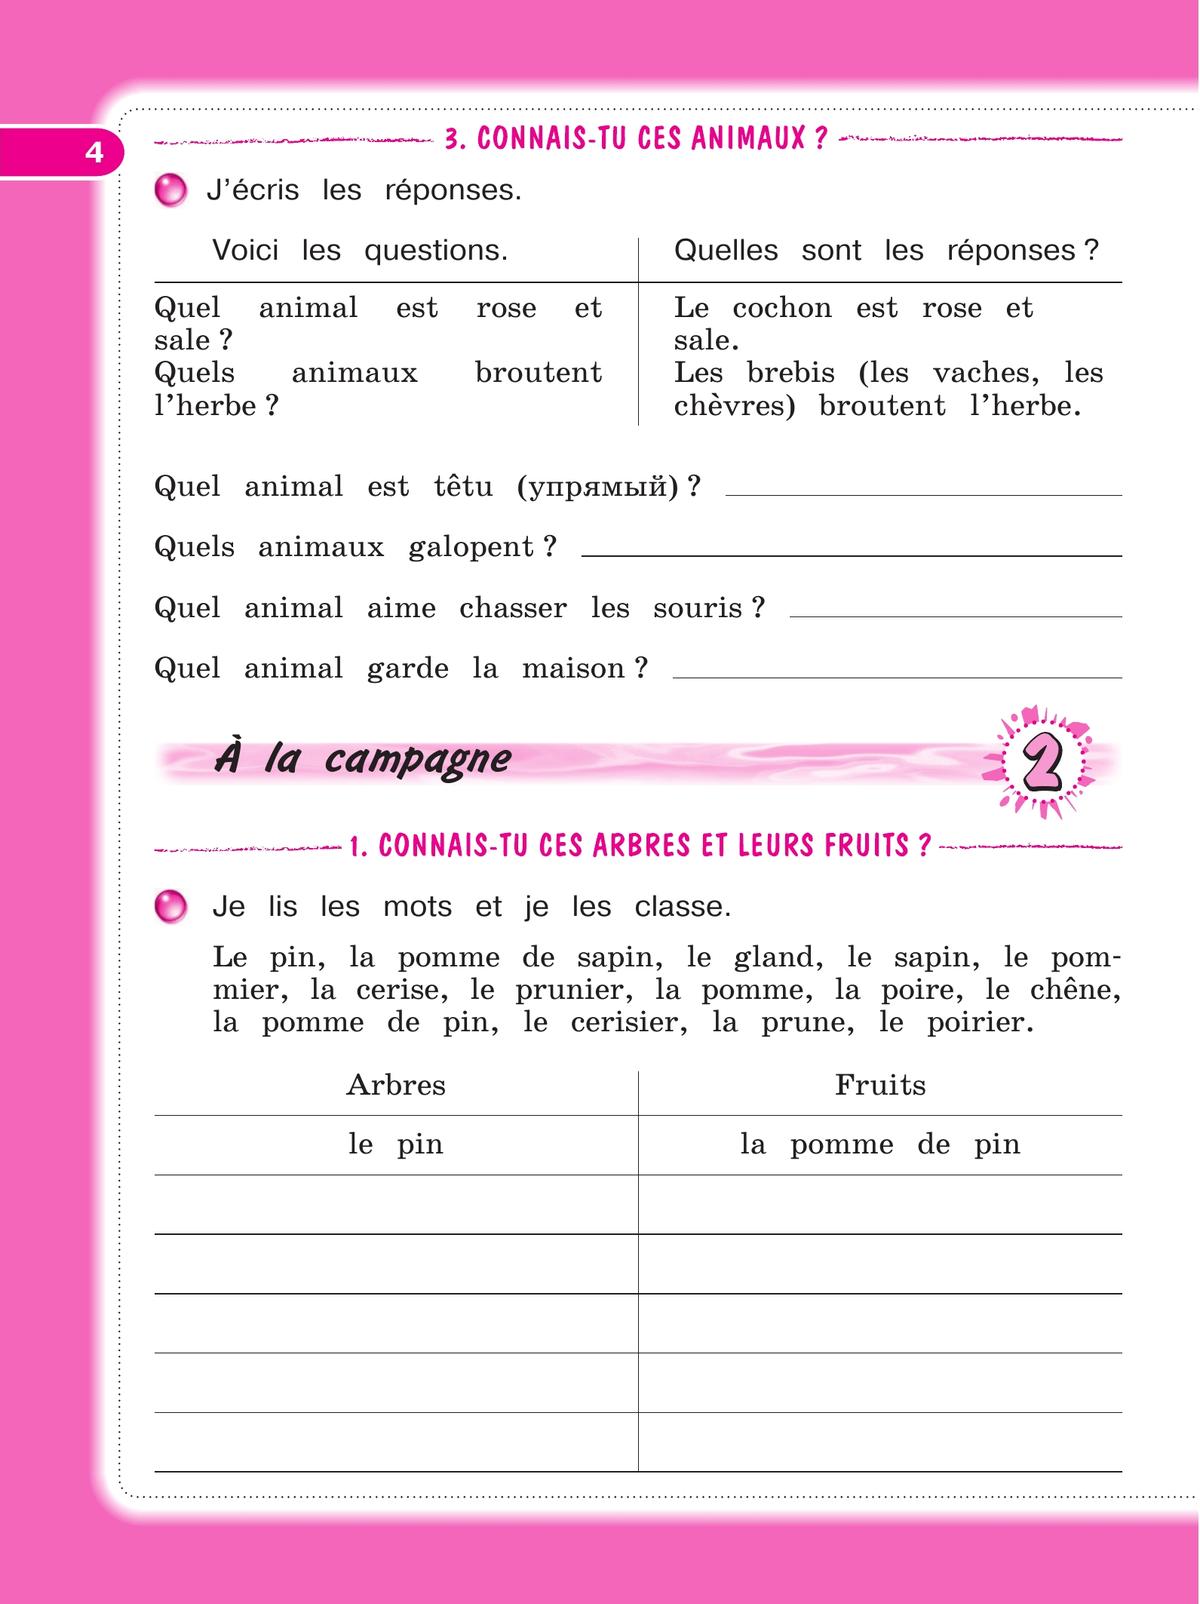 Французский язык. Рабочая тетрадь. 3 класс 7